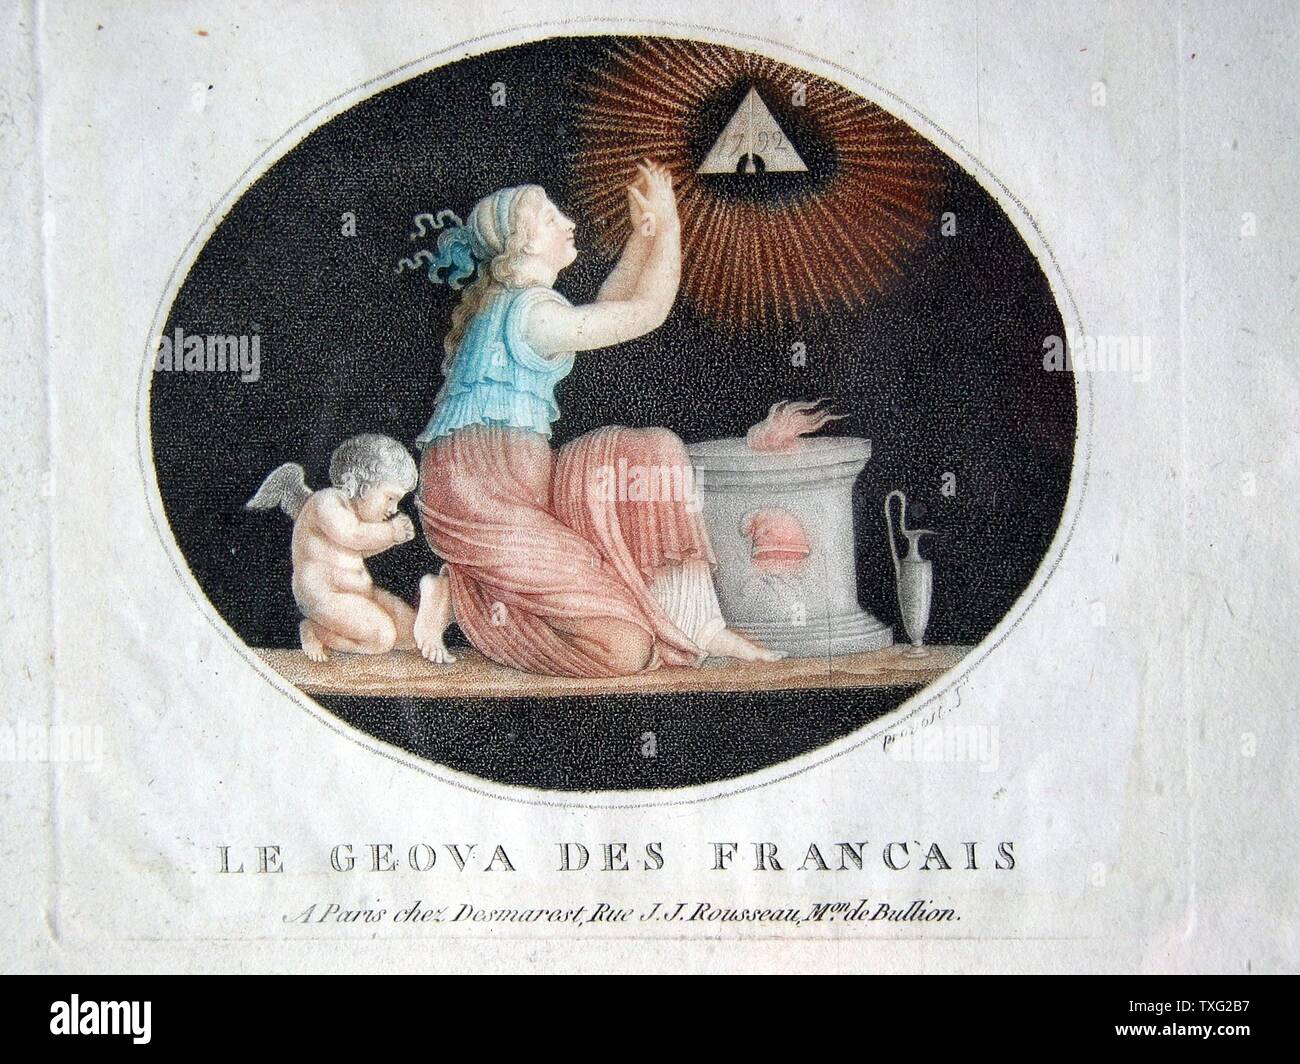 Benoît-Louis Prévost Le Génova des Français  1792 or 1793 Colour engraving (18 cm x 23.5 cm) maison Bullion chez Desmaret Paris, musée de la Franc-Maçonnerie Stock Photo